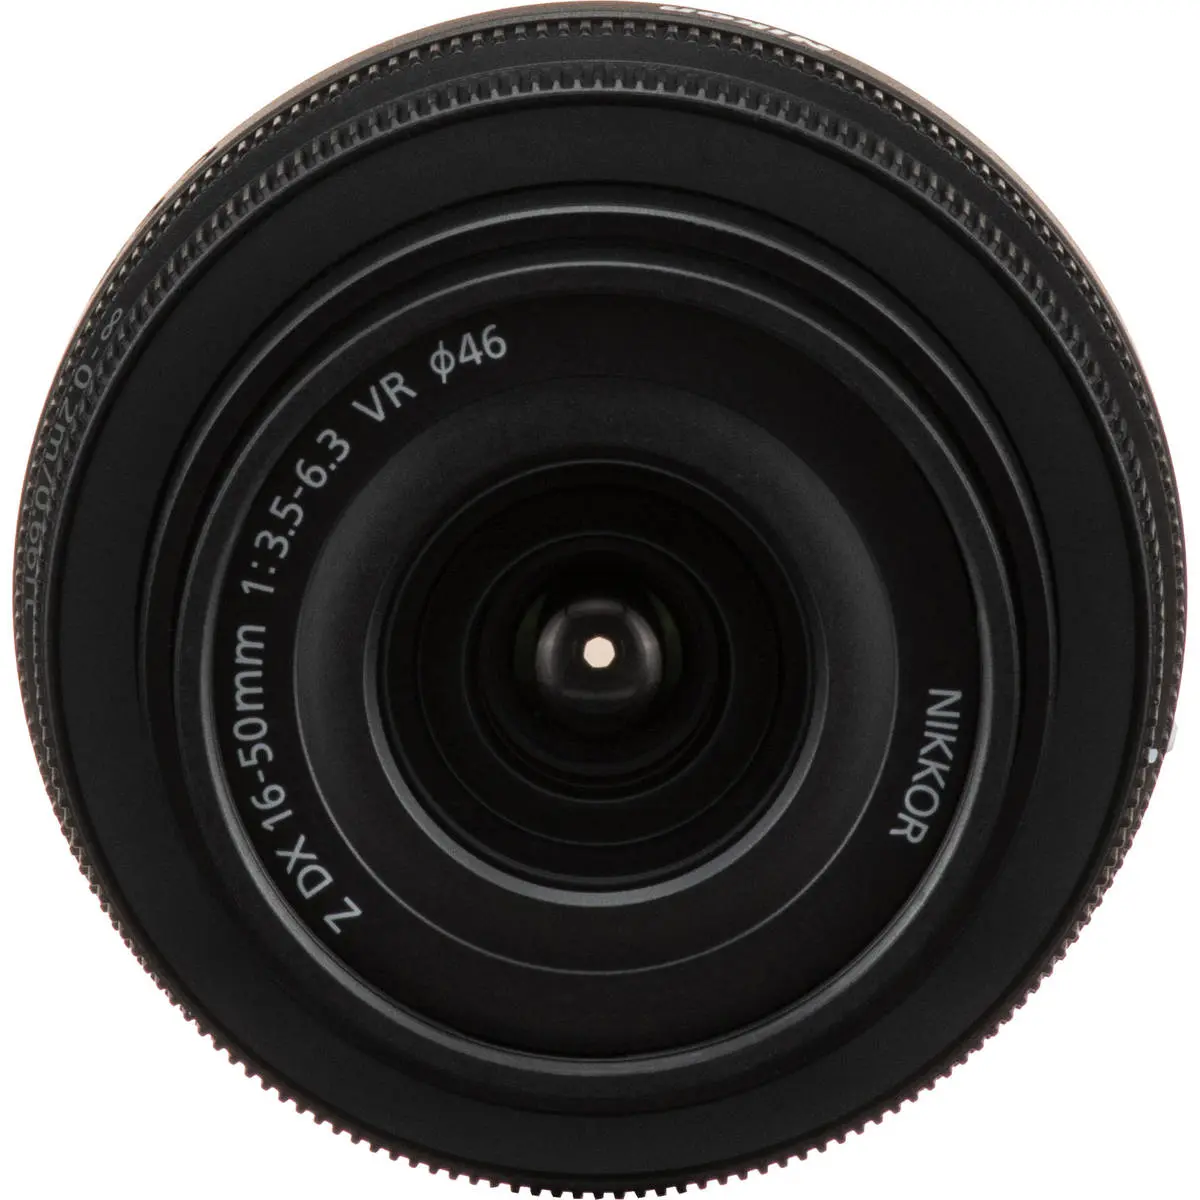 5. Nikon NIKKOR Z DX 16-50MM F/3.5-6.3 VR